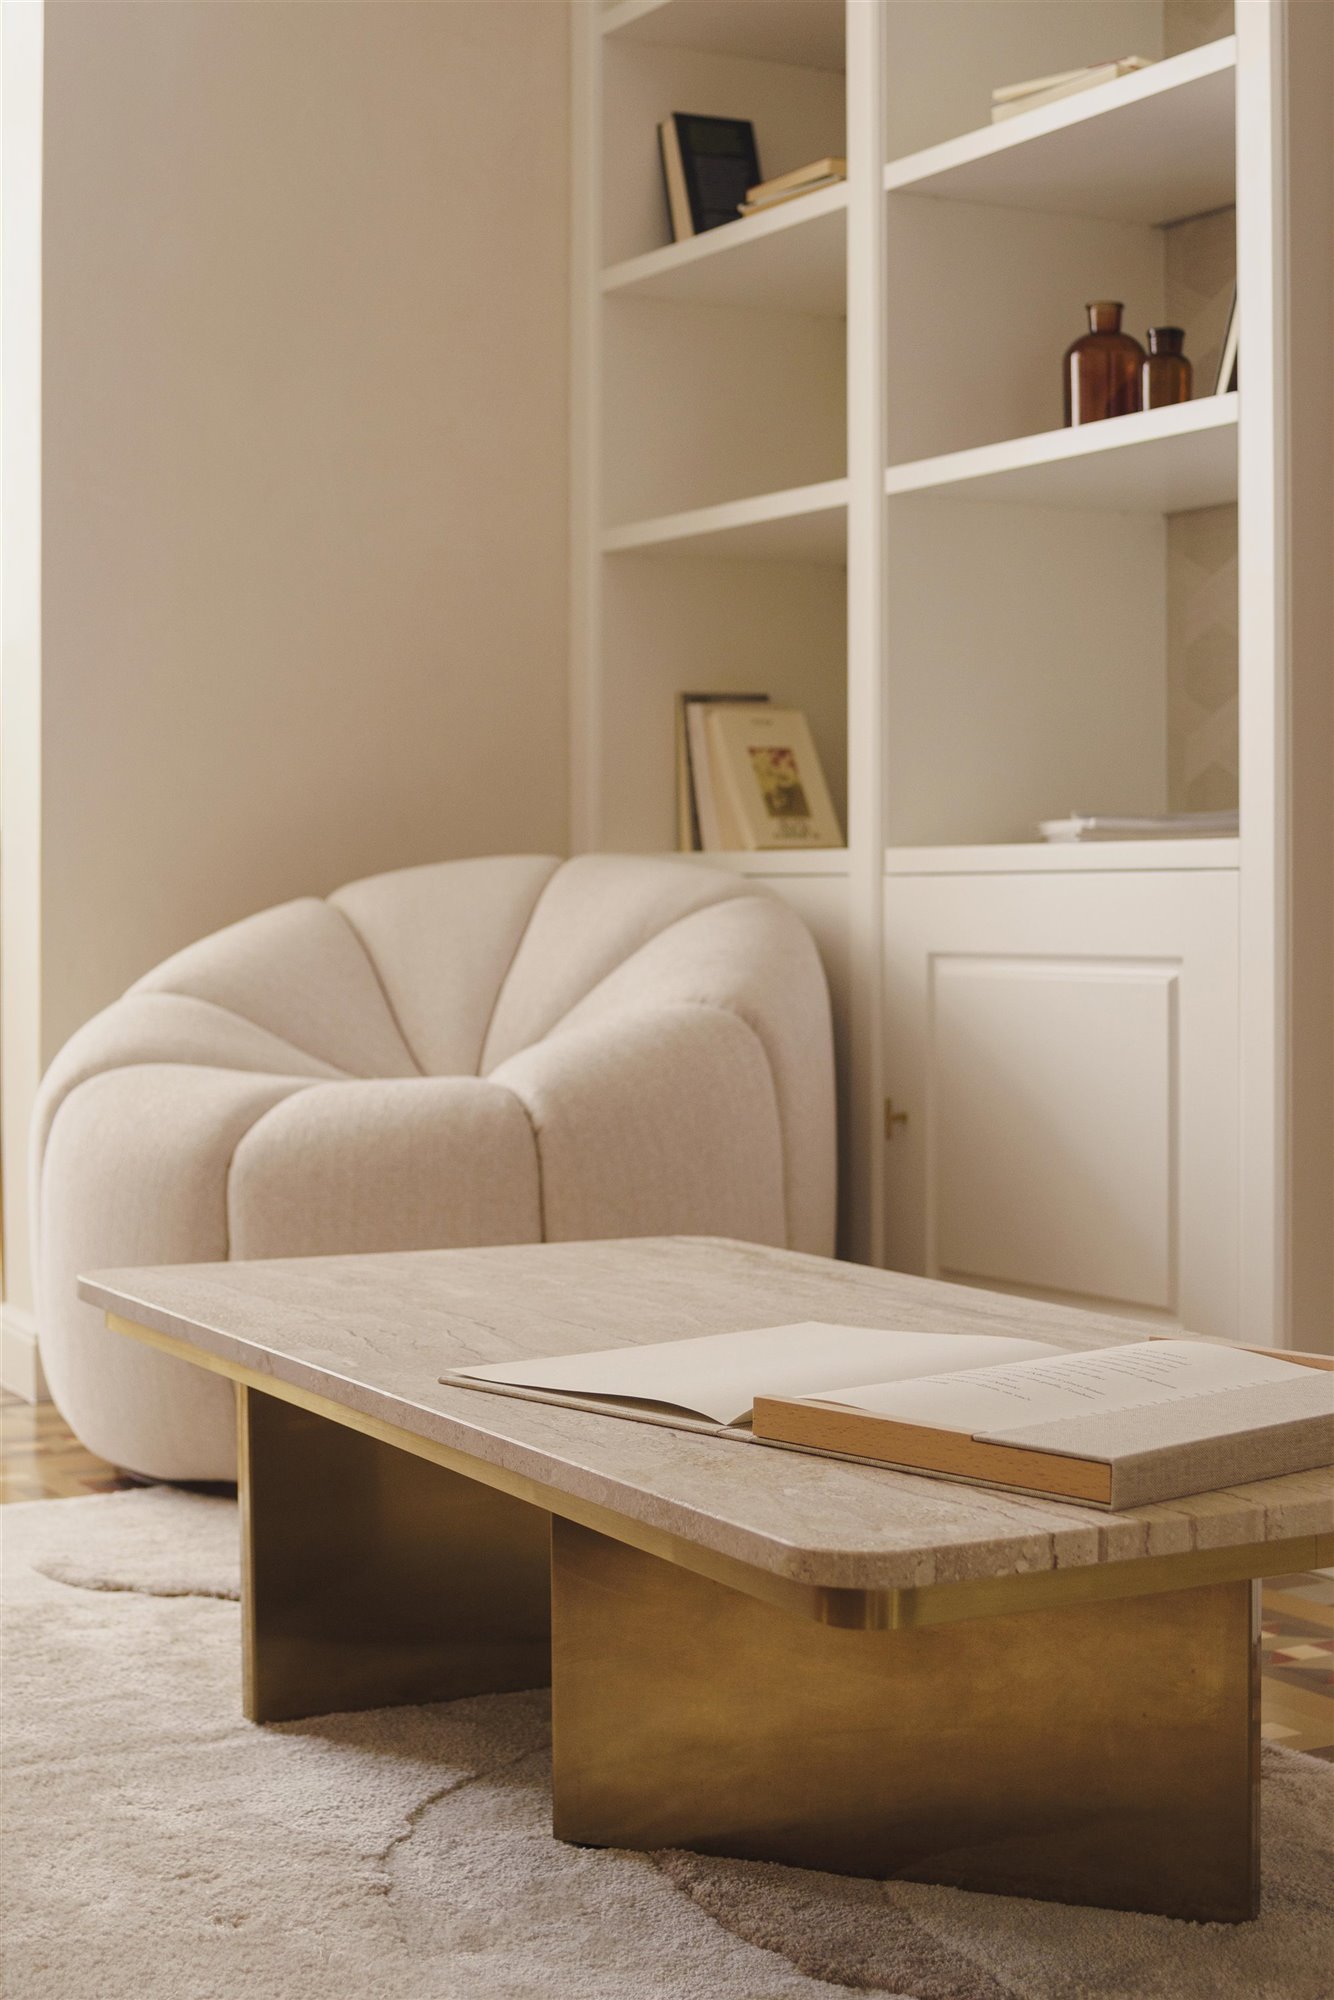 cc house astet salón blanco con sillón y mesa de madera estantería